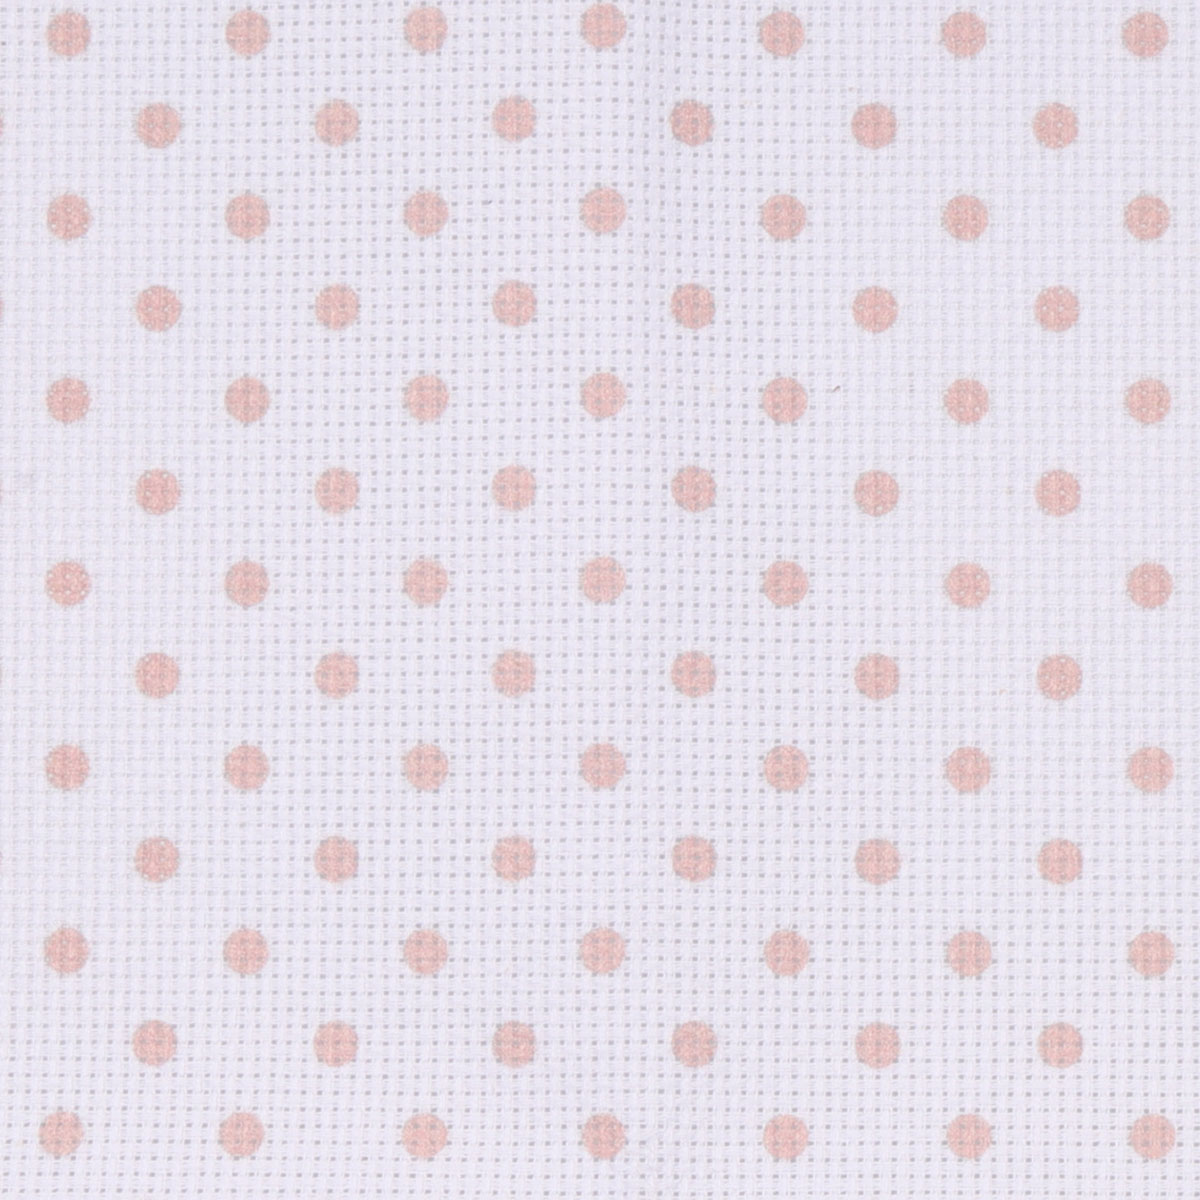 Канва Bestex для вышивания шитья и рукоделия дизайнерская 30*30 см Розовый горошек - фото 4